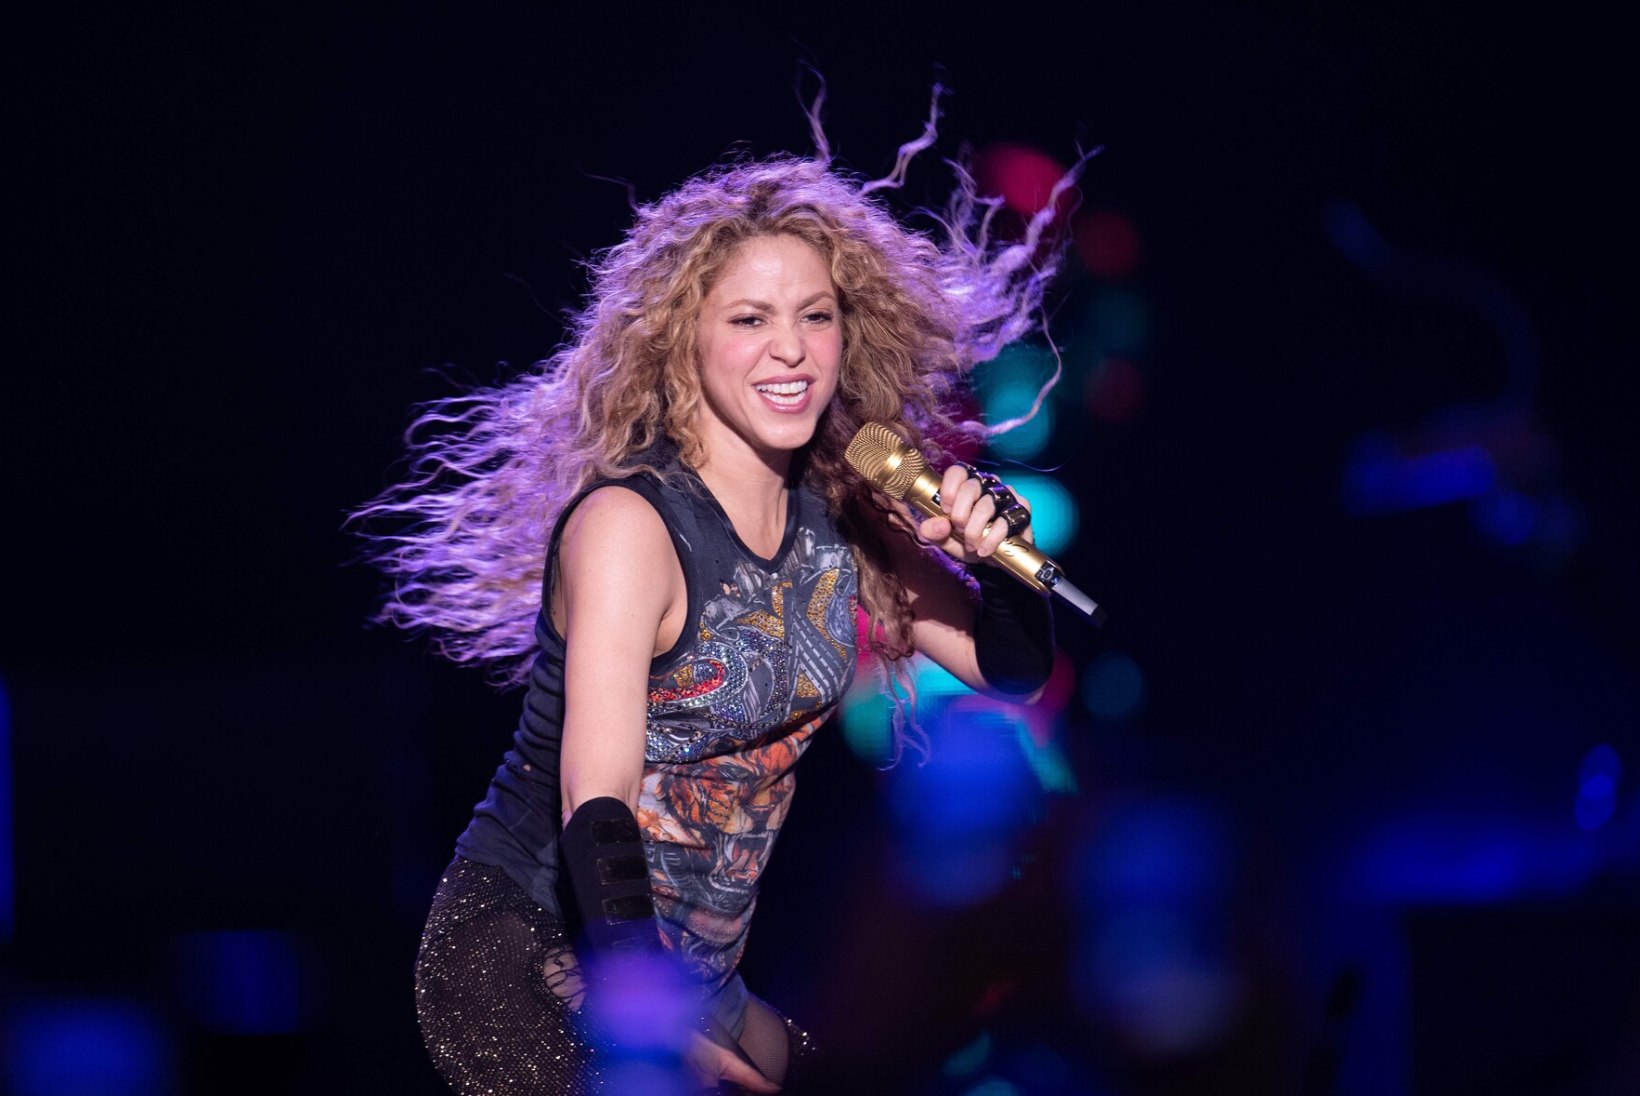 Fännid raevus: Shakirast lahku läinud Gerard Piqué poseerib Instas uue pruudiga